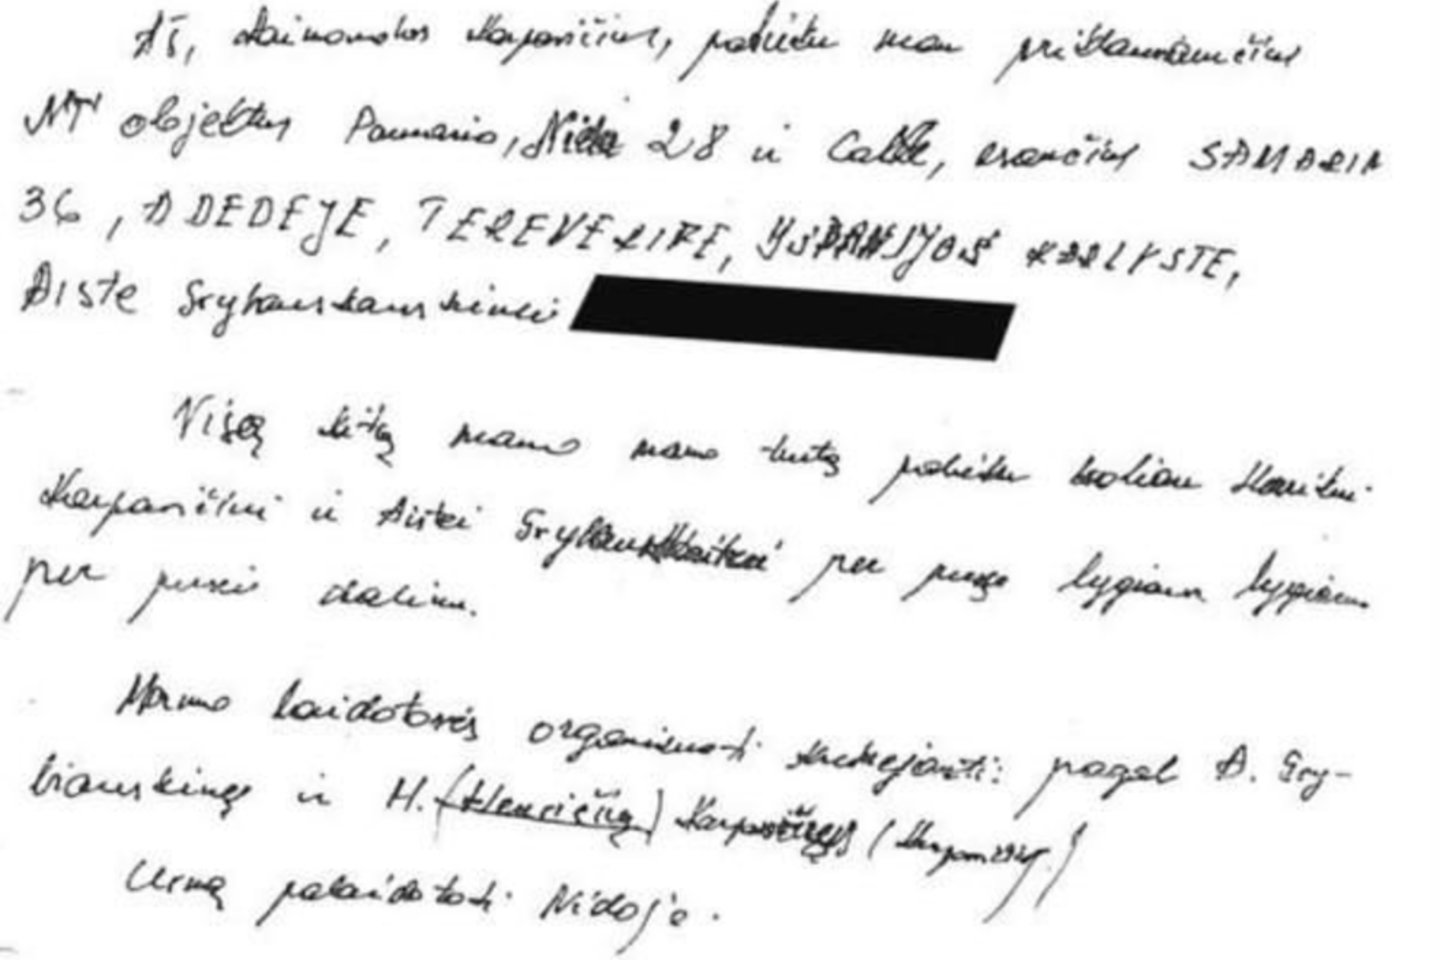  Toliau tęsiasi kova dėl mįslingomis aplinkybėmis patvirtinto R.Karpavičiaus testamento. <br> LR archyvo nuotr.